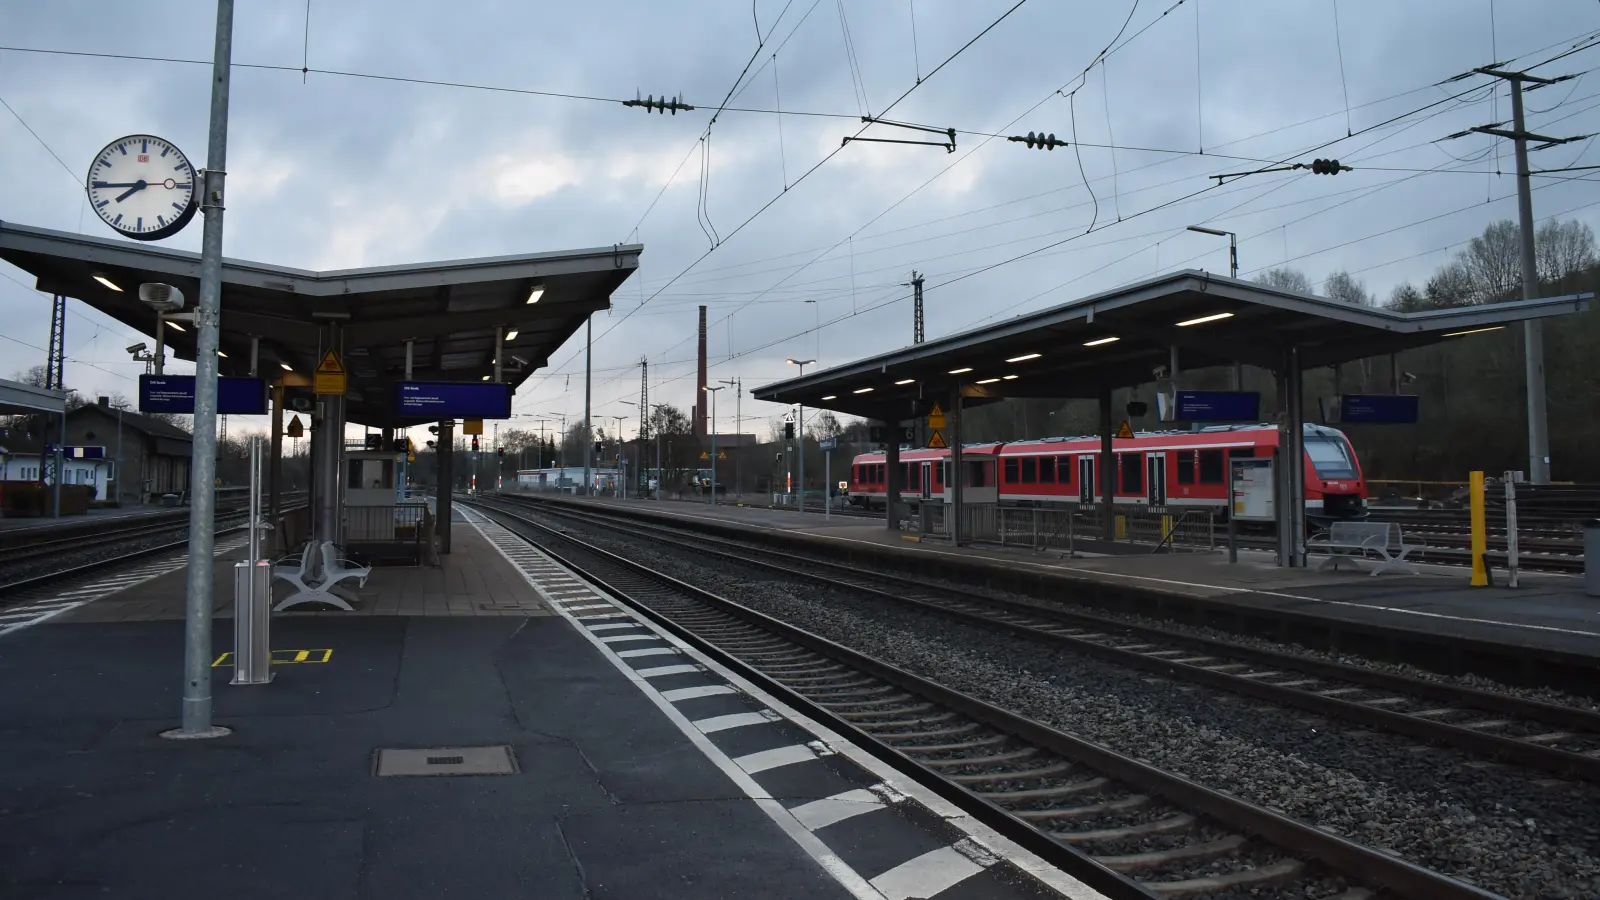 Verwaist waren Bahnsteige am Montagmorgen am Neustädter Bahnhof. Nur ein stehender Zug war zu sehen. (Foto: Ute Niephaus)